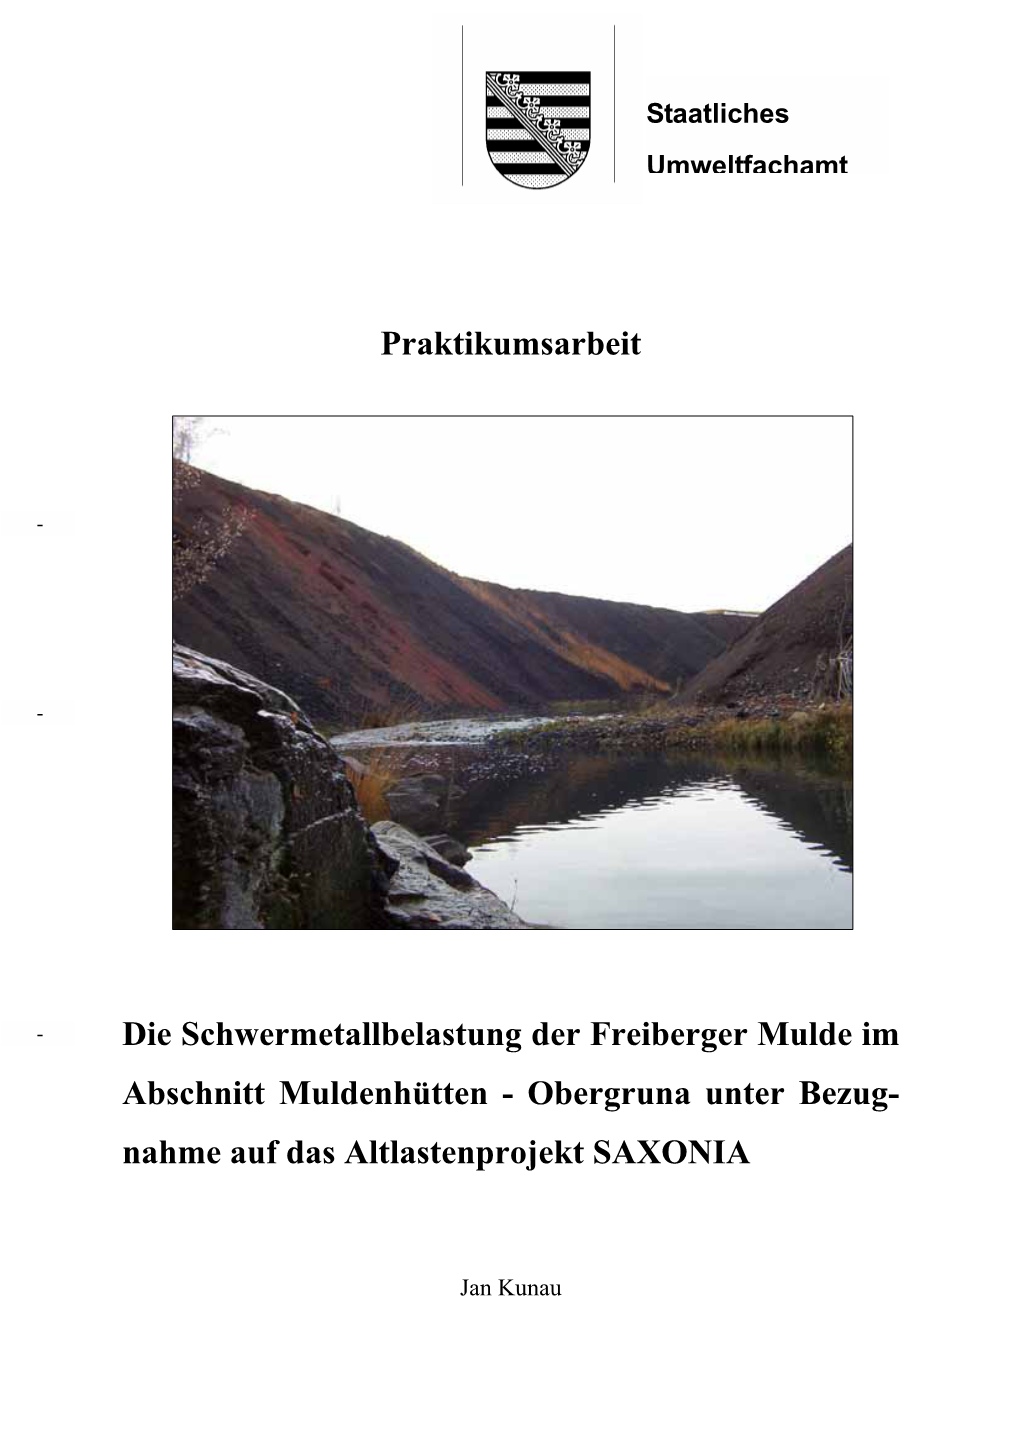 Schwermetallbelastung Der Freiberger Mulde Im Abschnitt Muldenhütten - Obergruna Unter Bezug- Nahme Auf Das Altlastenprojekt SAXONIA